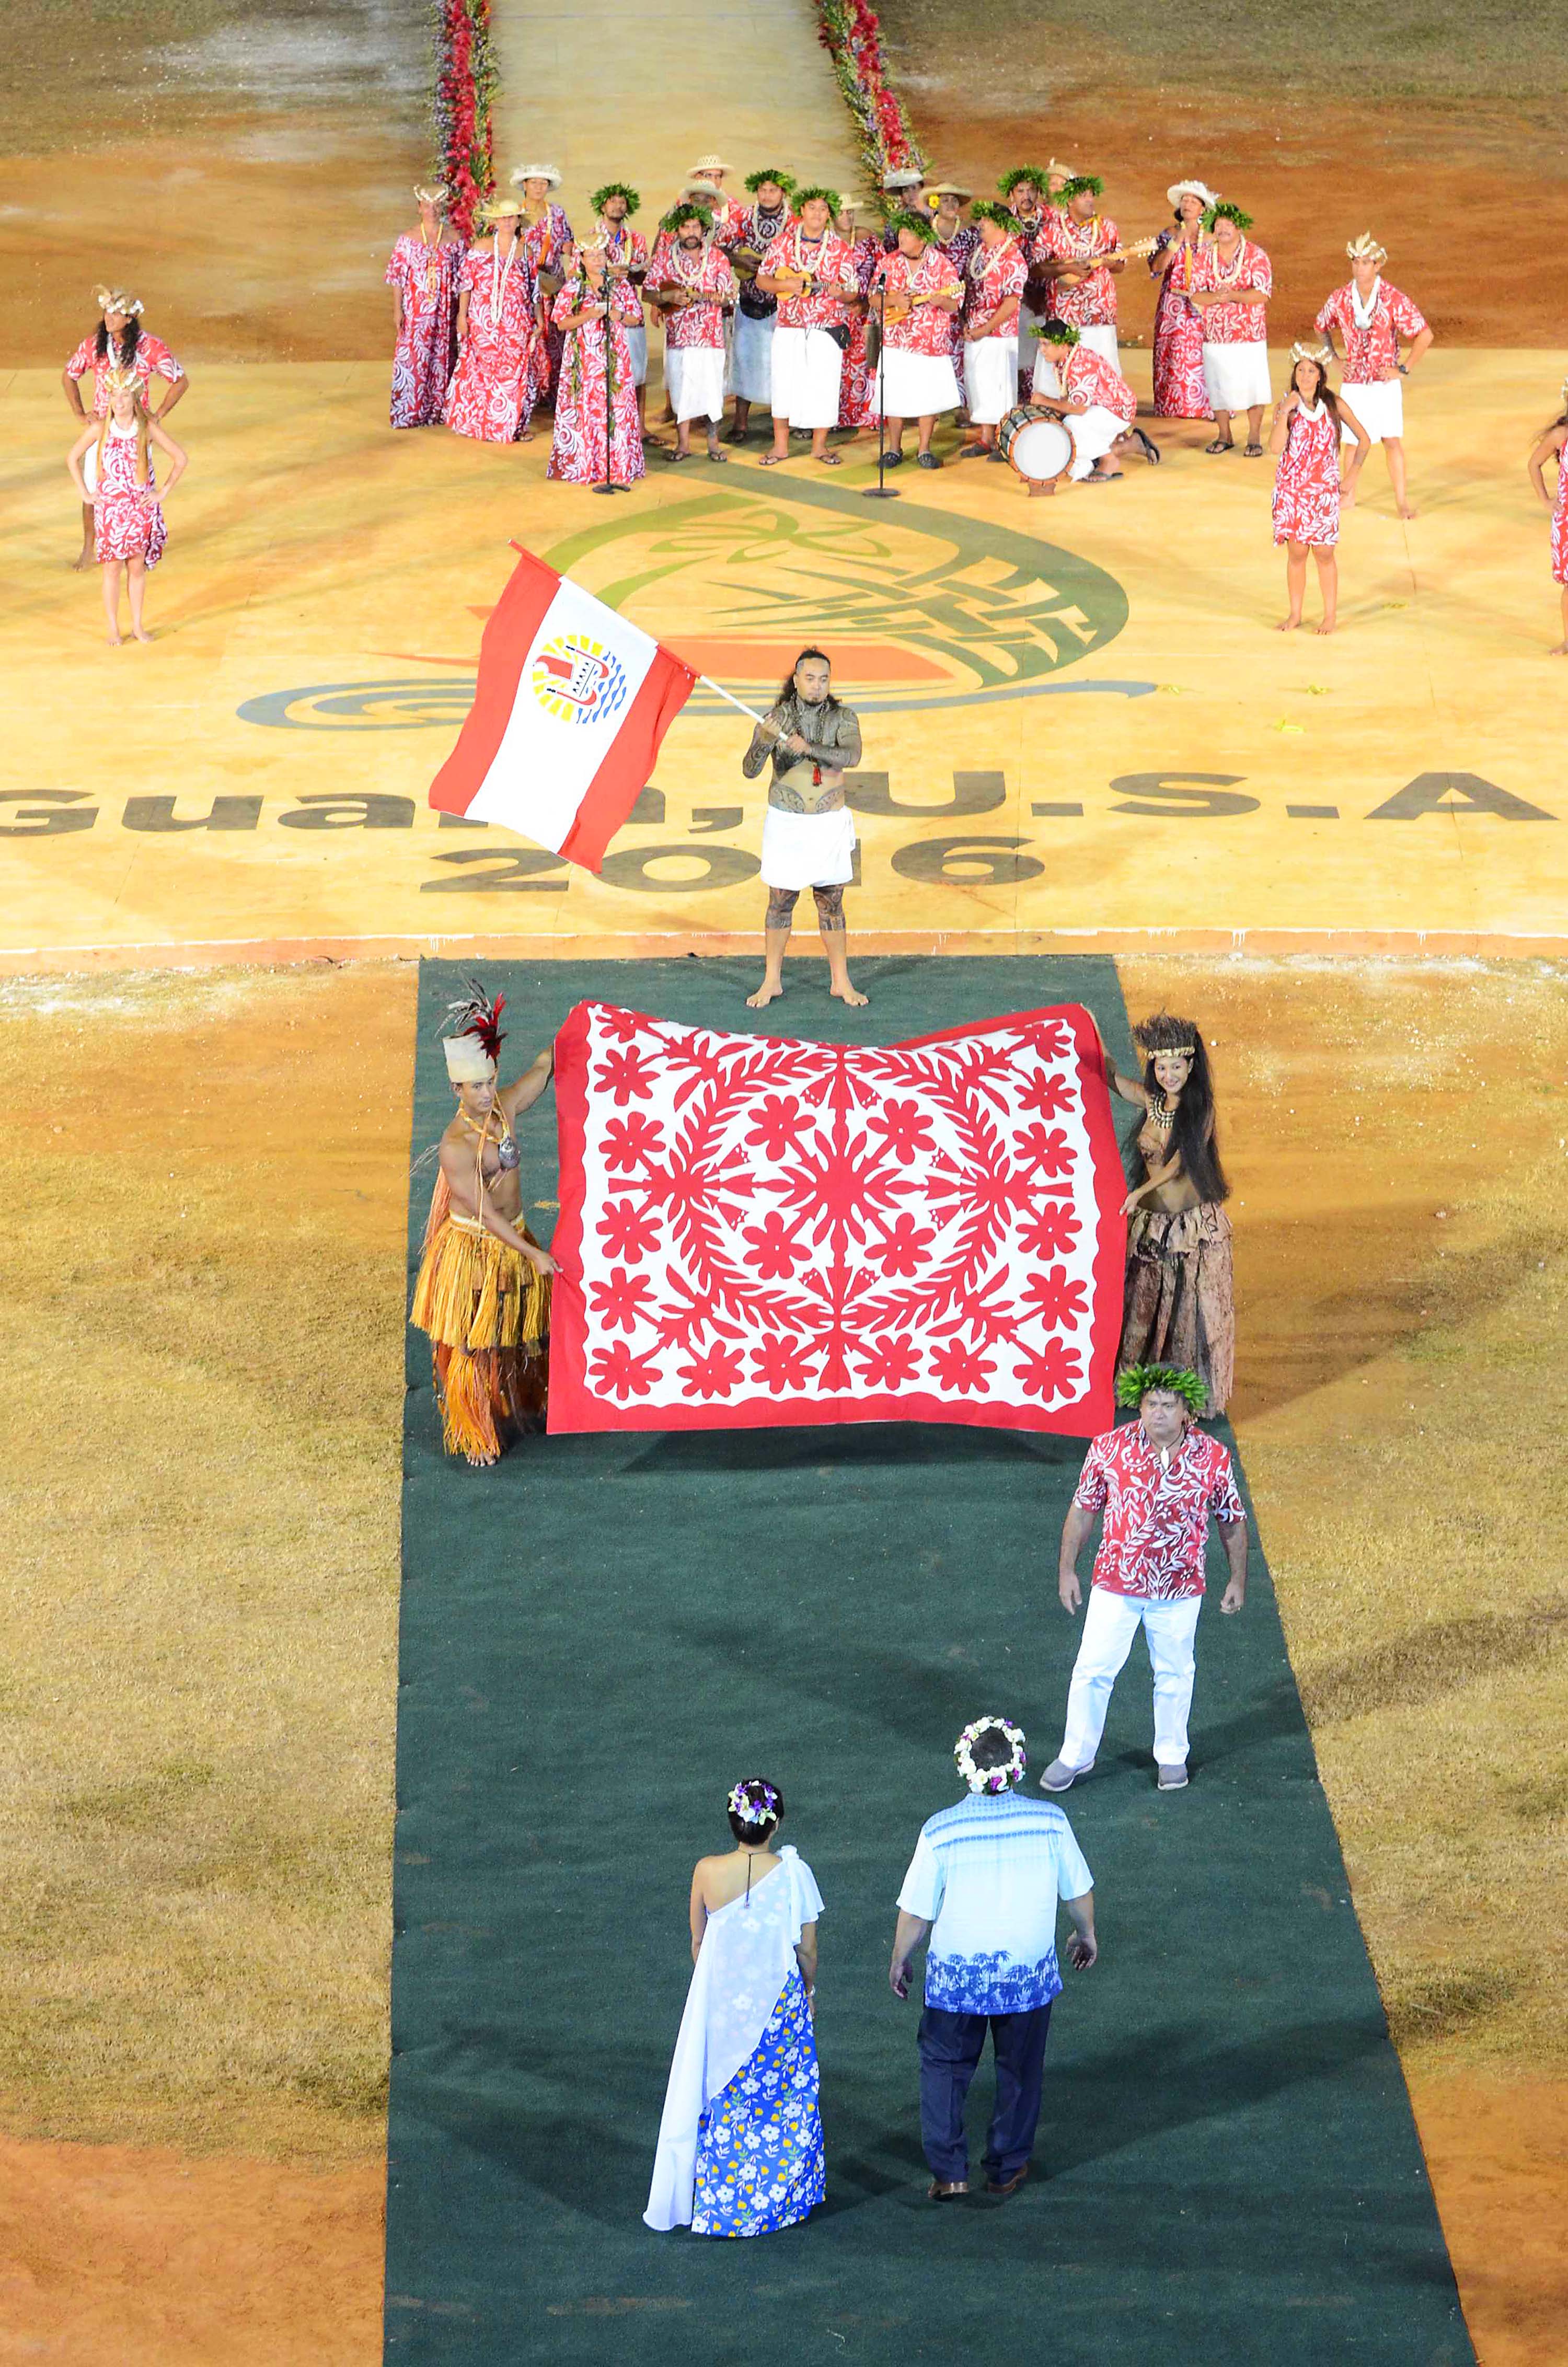 Lors de la cérémonie d’ouverture, le ministre de la Culture, Heremoana Maamaatuaiahutapu, a remis aux organisateurs un tifaifai rouge et blanc, les couleurs officielles de la délégation.